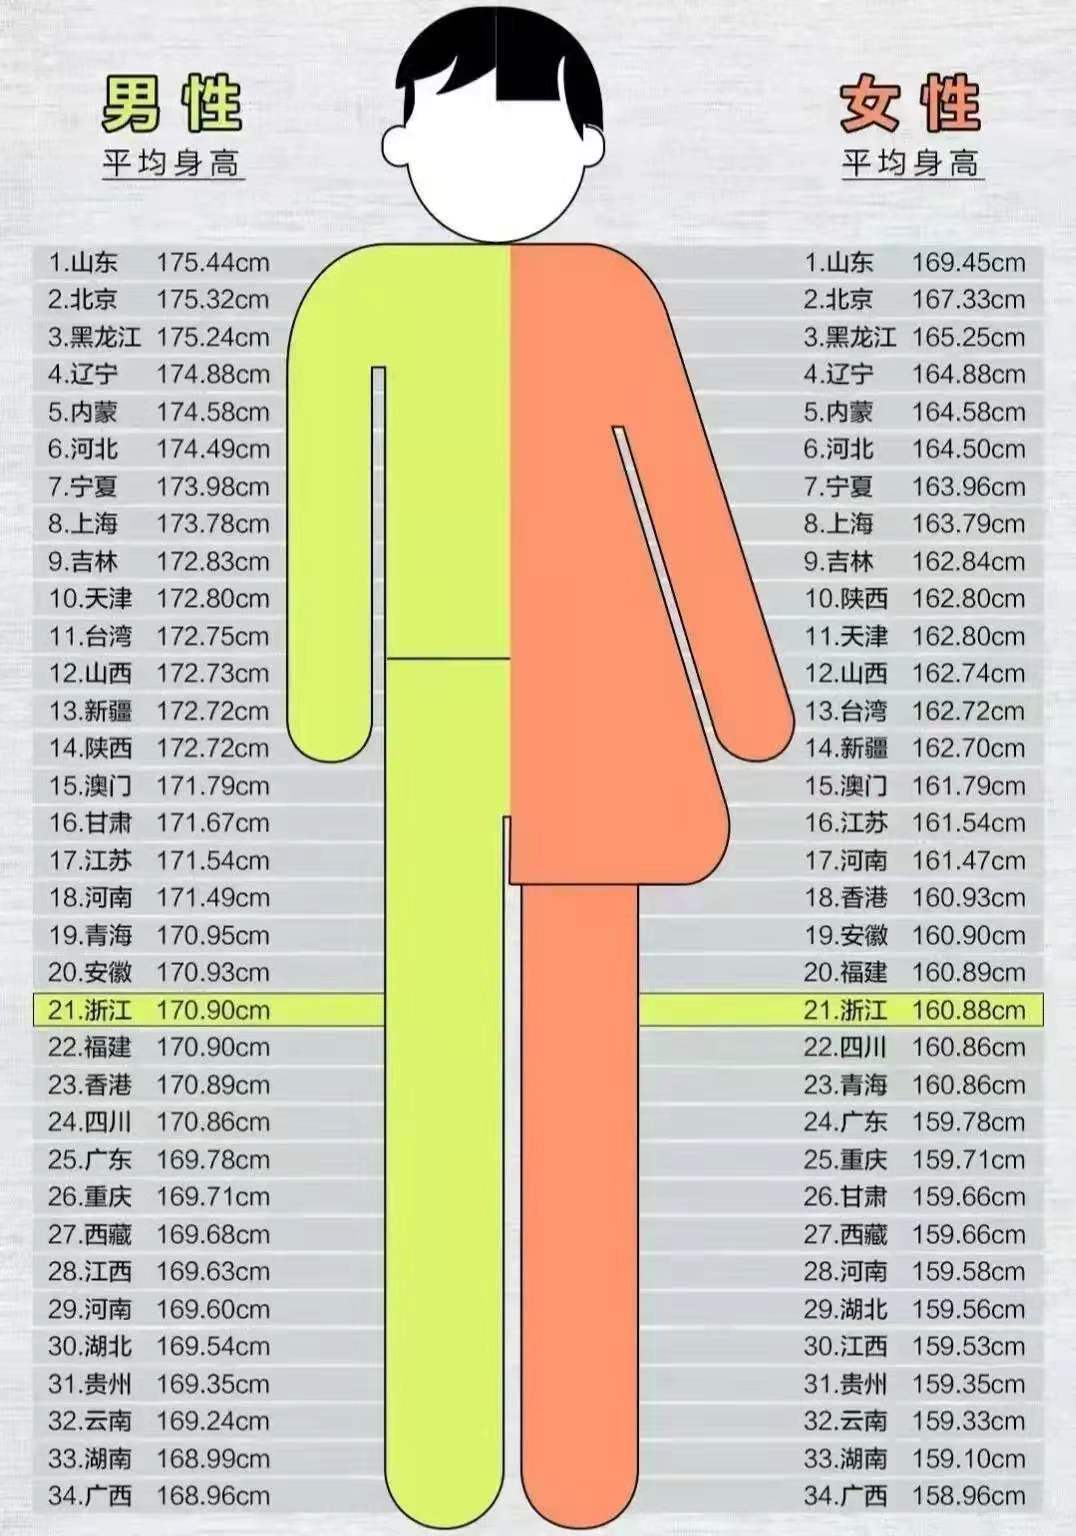 河南男生平均身高(中国各省男性平均身高一览表)